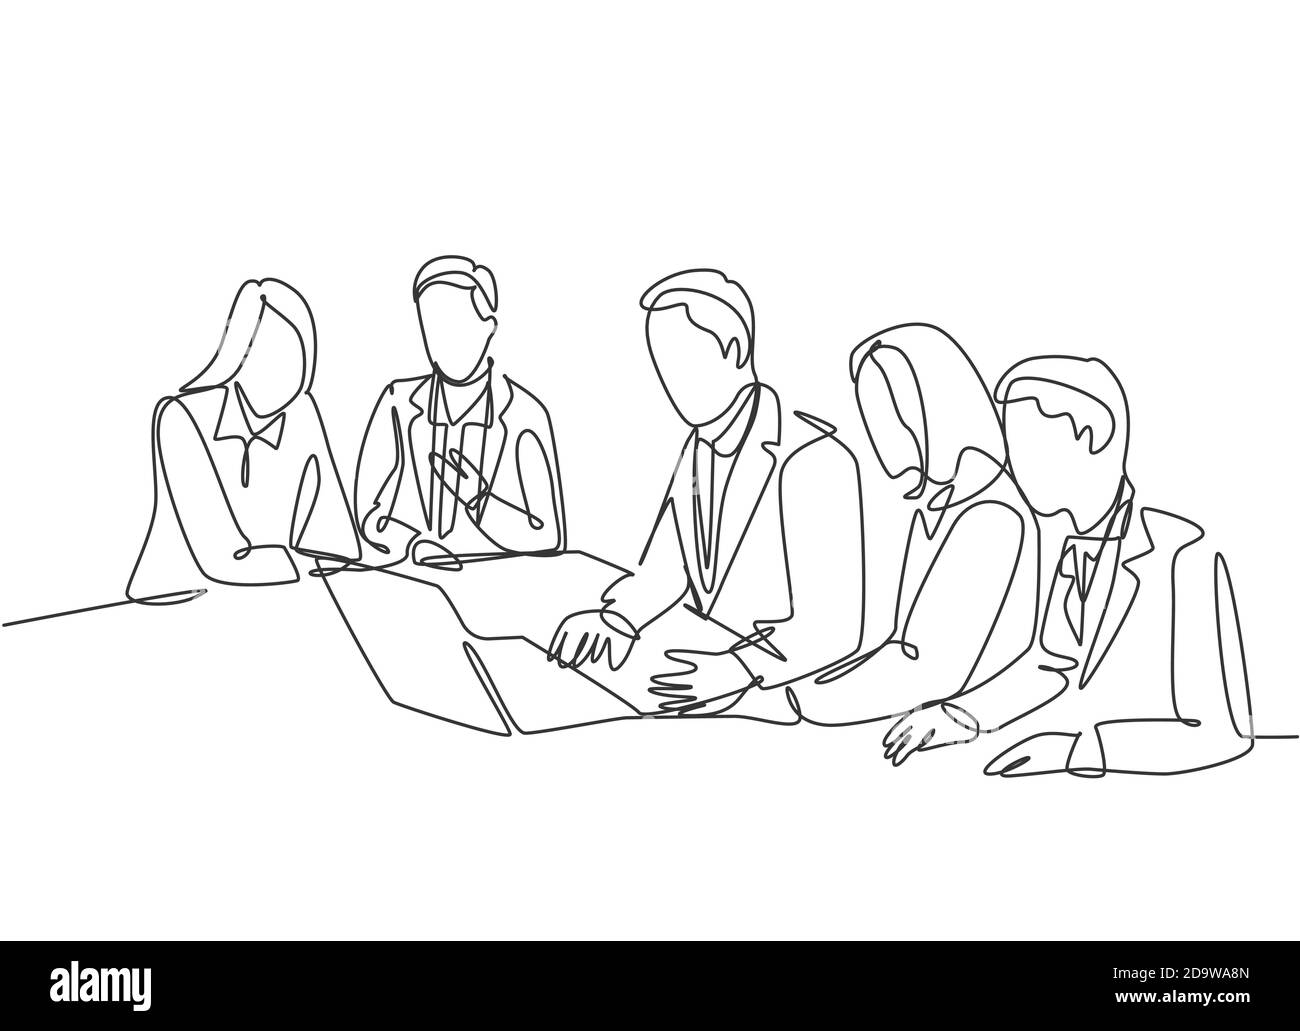 Un dessin continu d'un jeune présentateur présentant une stratégie d'entreprise pour augmenter les ventes lors d'une réunion de bureau. Concept de plan d'affaires Illustration de Vecteur